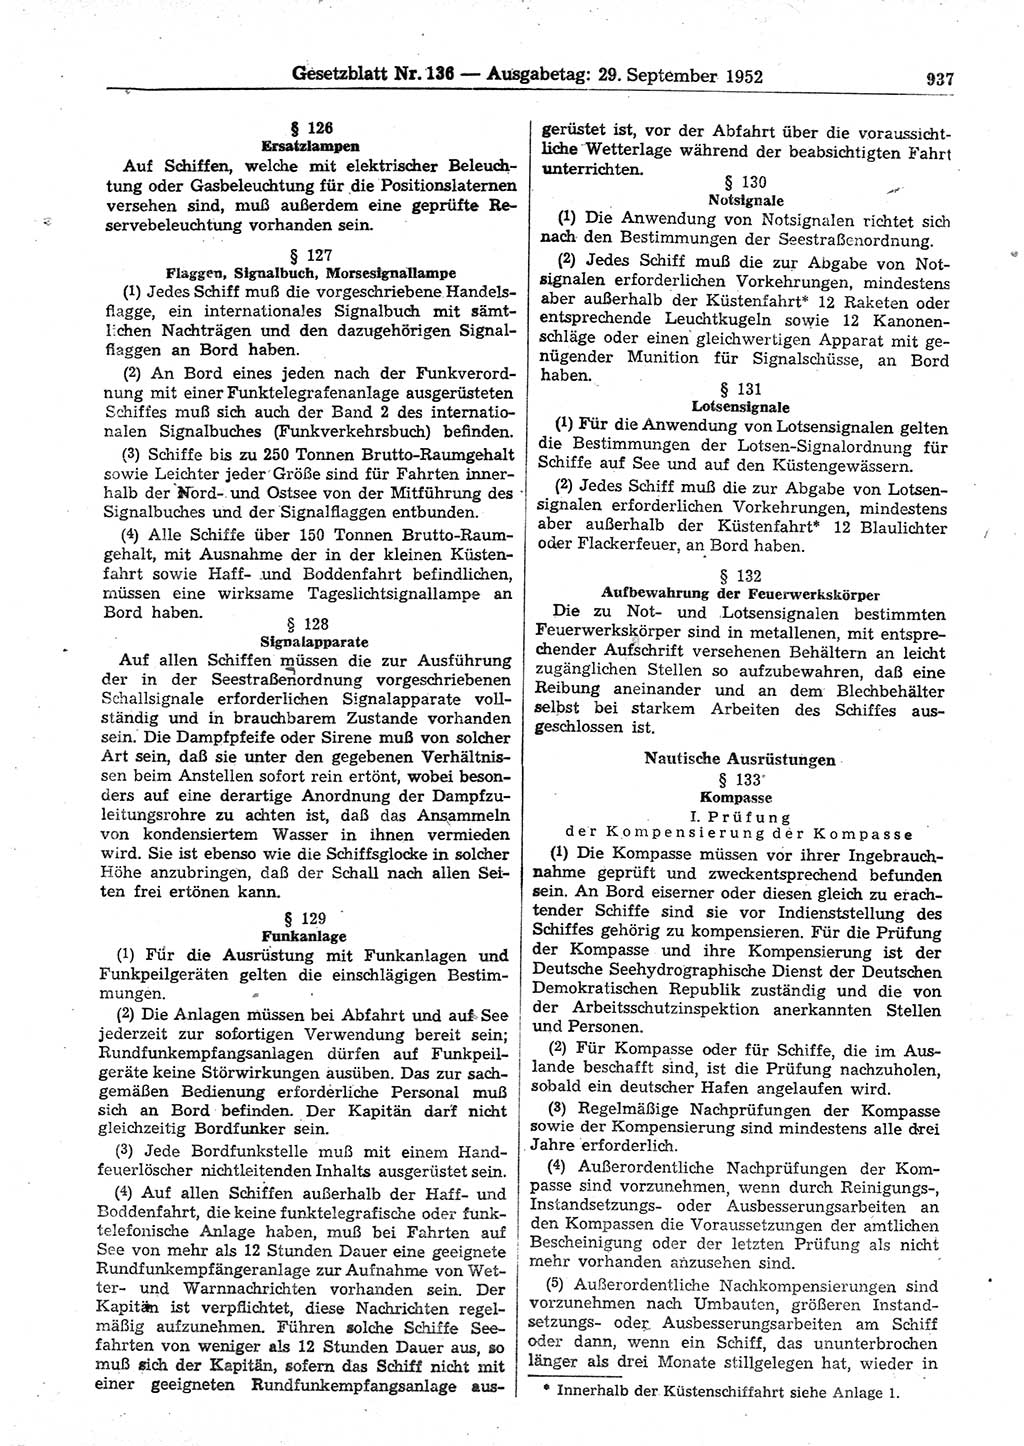 Gesetzblatt (GBl.) der Deutschen Demokratischen Republik (DDR) 1952, Seite 937 (GBl. DDR 1952, S. 937)